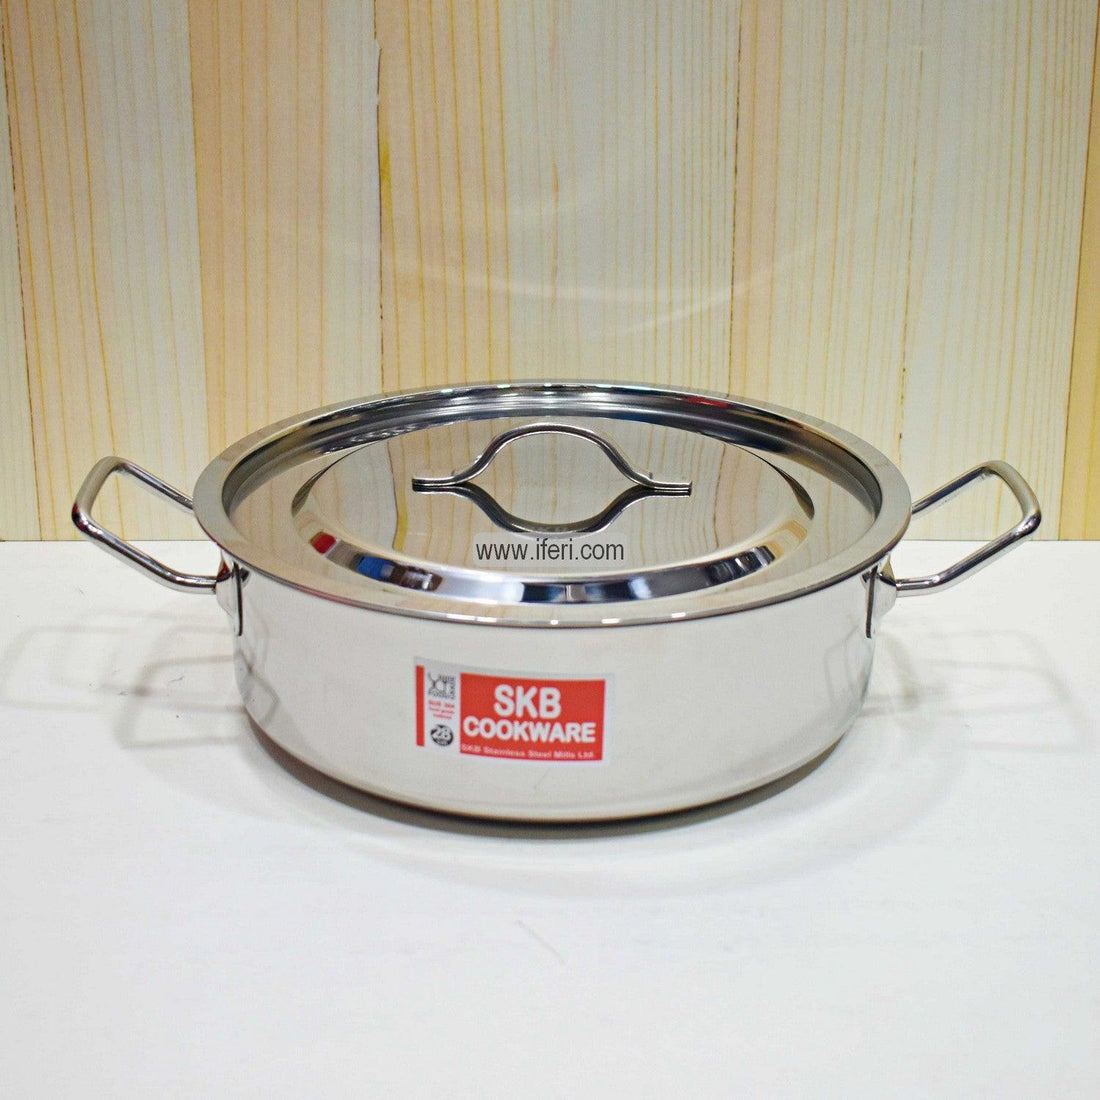 24 cm SKB Stainless Steel Saucepan Pan SN0704 Price in Bangladesh - iferi.com